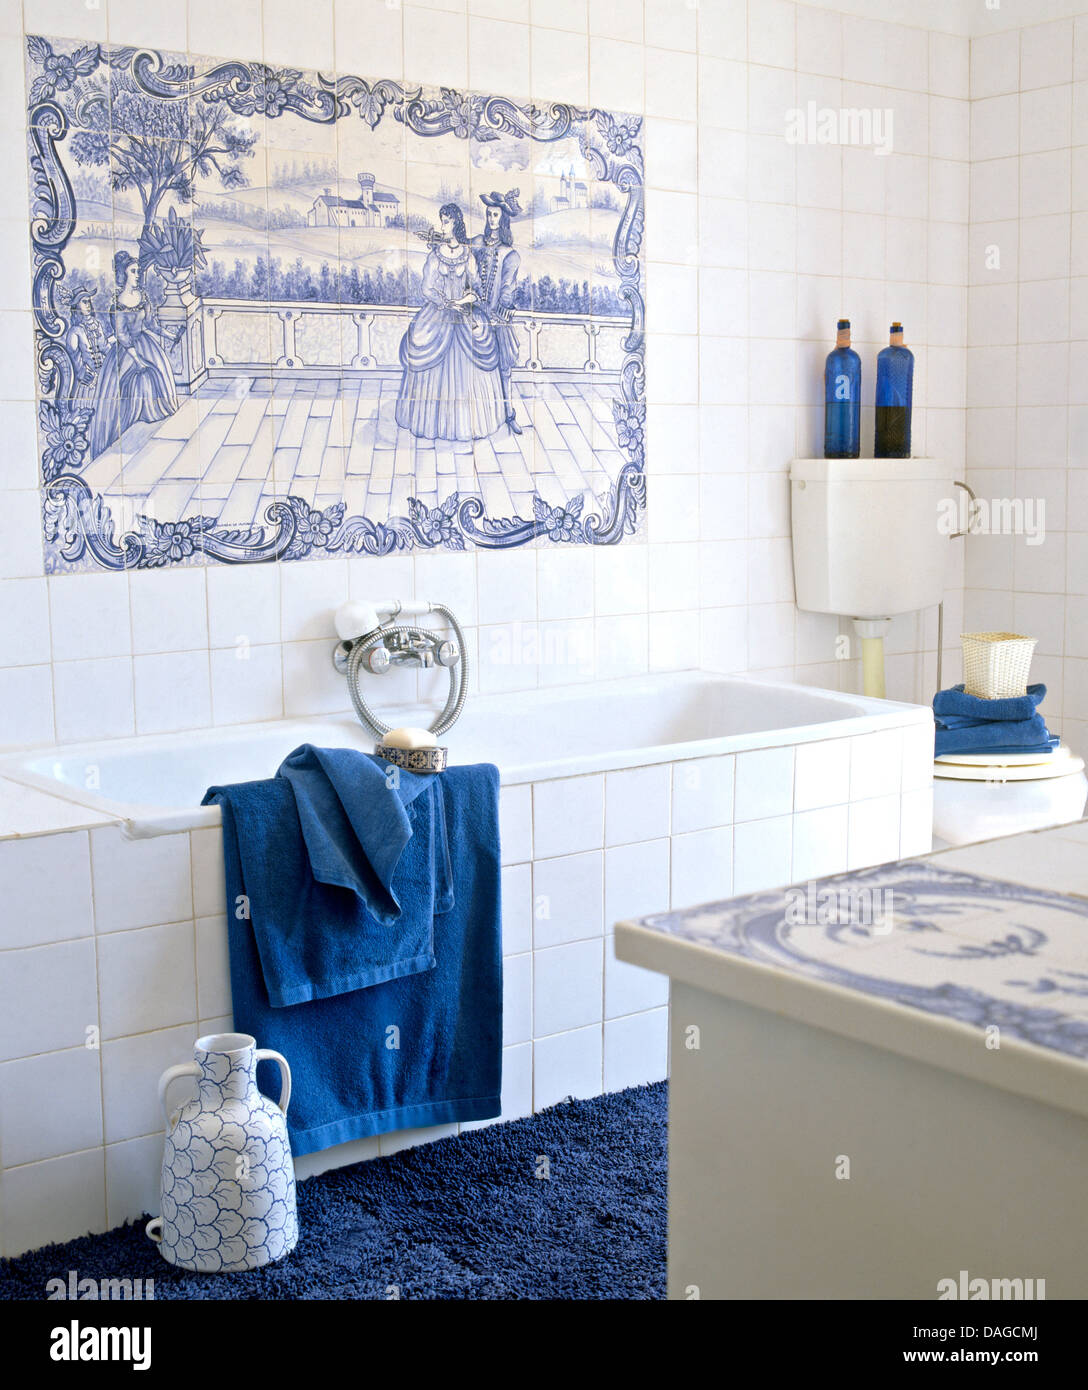 Blau + weiß gefliest Dekorplatte über Bad mit weißen Fliesen Surround in  weiß geflieste Badezimmer mit blauen Tüchern und Teppich Stockfotografie -  Alamy